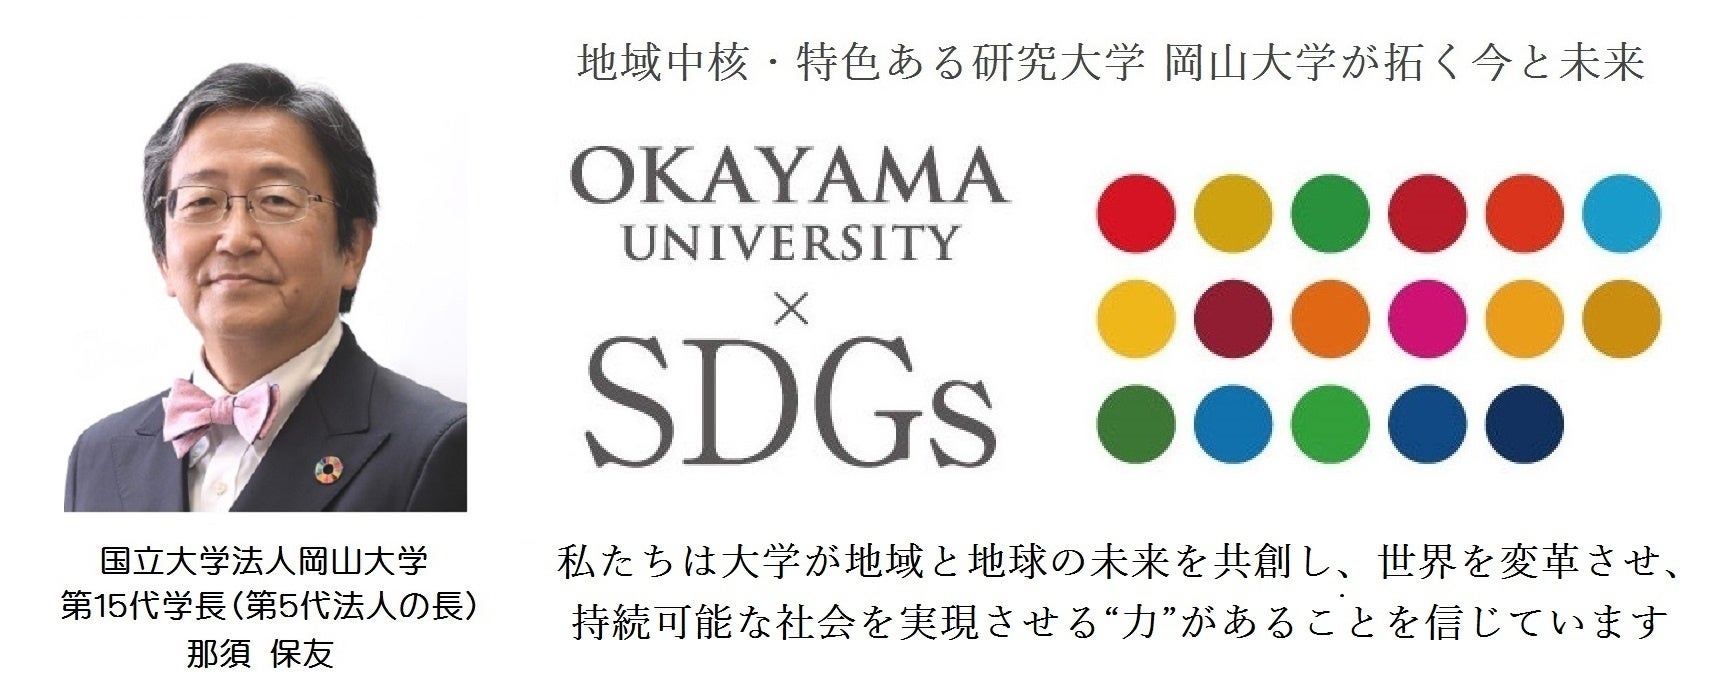 【岡山大学】岡山大学SDGs 日経SDGsフェスティバル大阪関西「学びのチカラ」に参加